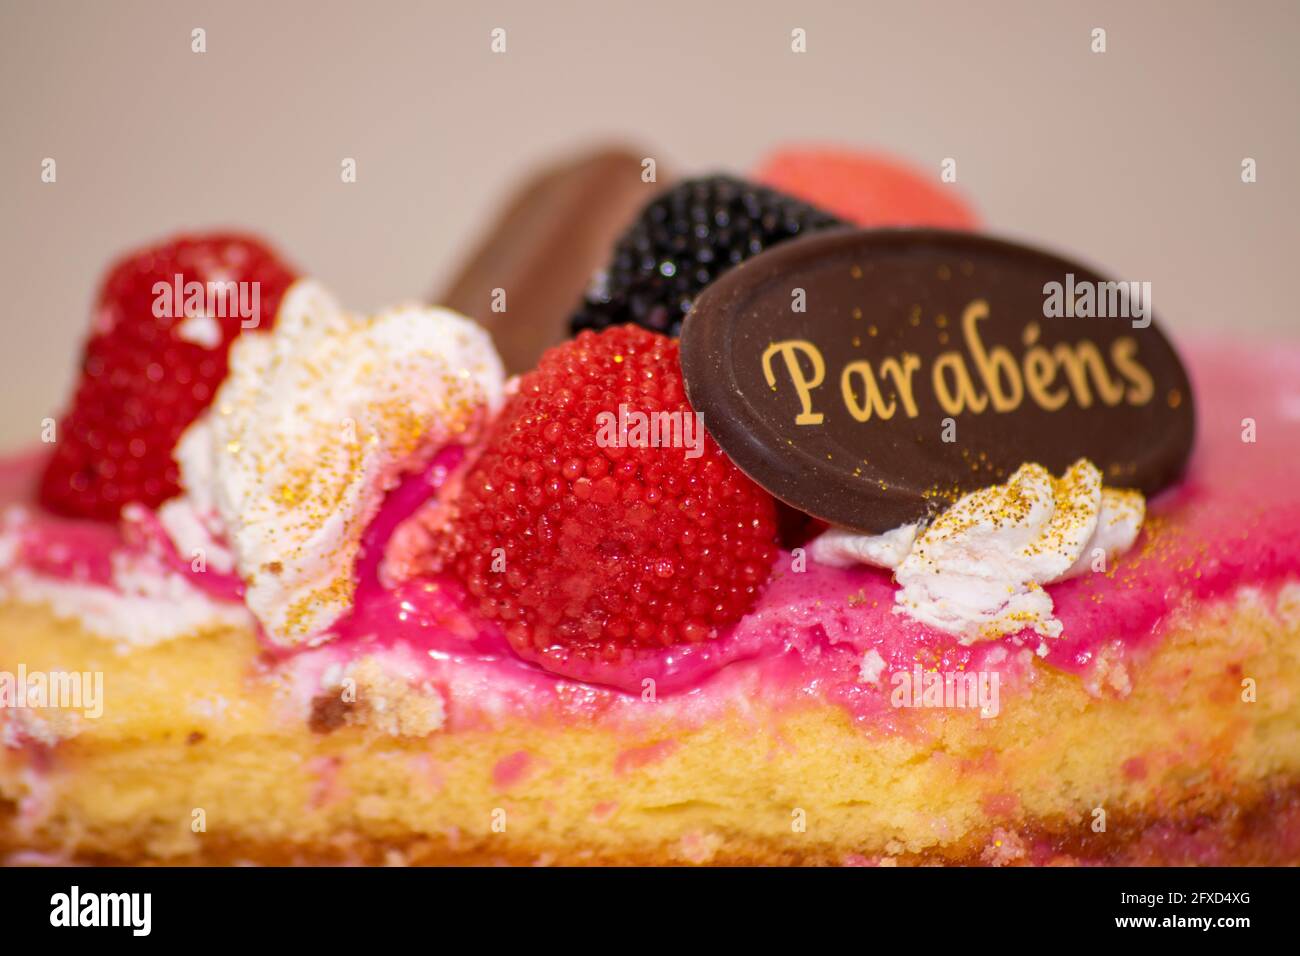 Happy Jubilare Kuchen aus Portugal mit dem Wort Parabéns, feiern oder feiern Kuchen zu Jubiläen Stockfoto